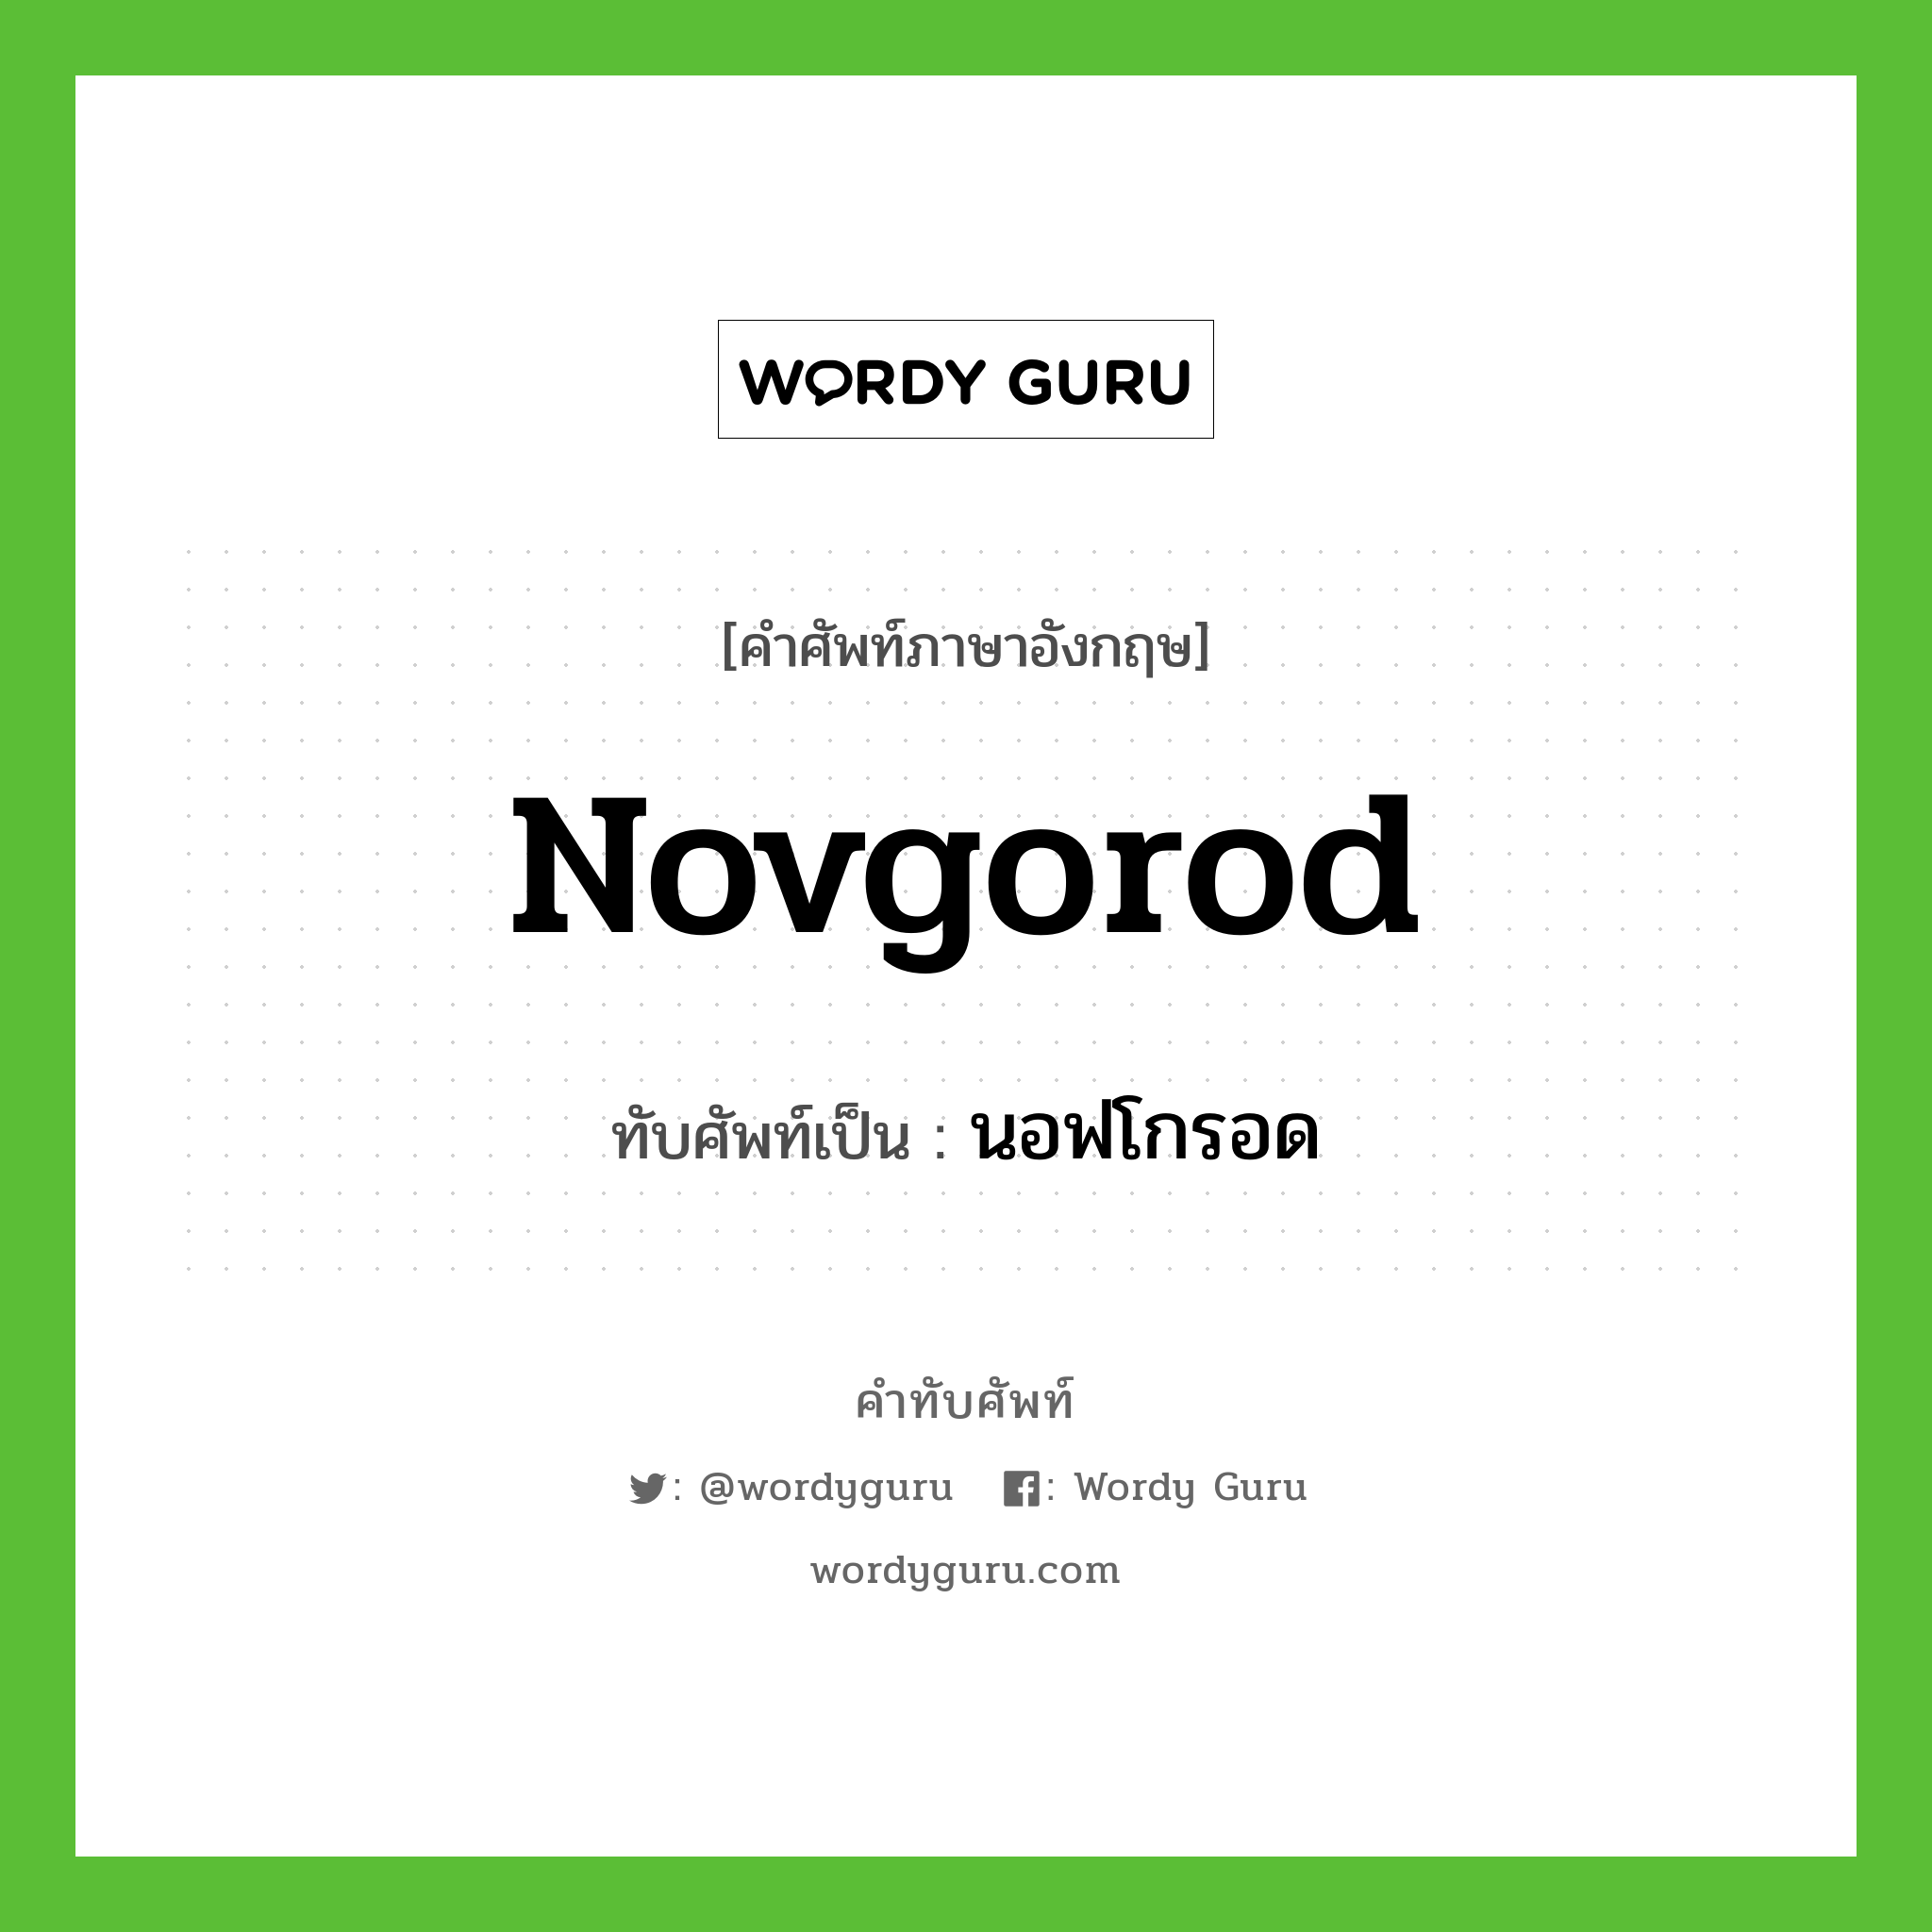 Novgorod เขียนเป็นคำไทยว่าอะไร?, คำศัพท์ภาษาอังกฤษ Novgorod ทับศัพท์เป็น นอฟโกรอด